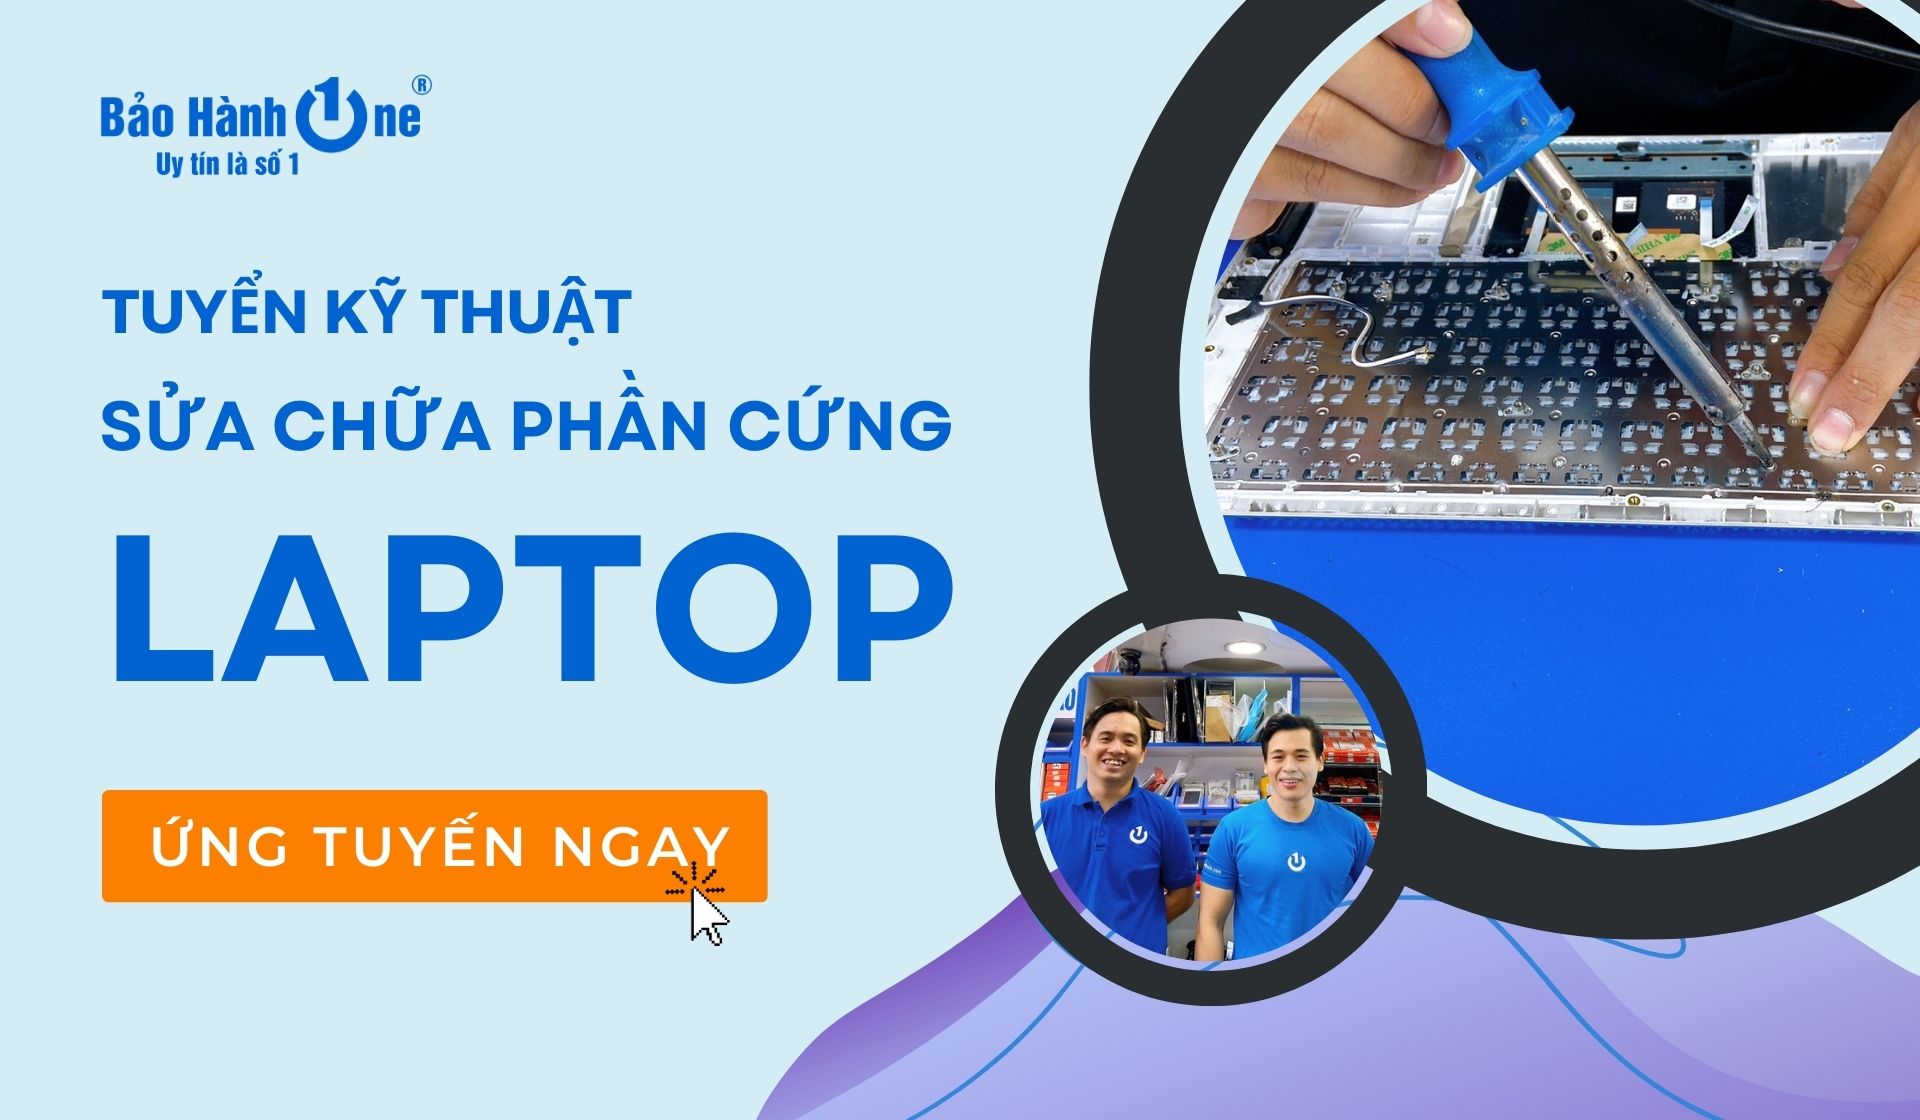 Tuyển Kỹ thuật sửa chữa phần cứng laptop tại Quận 1, Quận 10, Q. Tân Phú